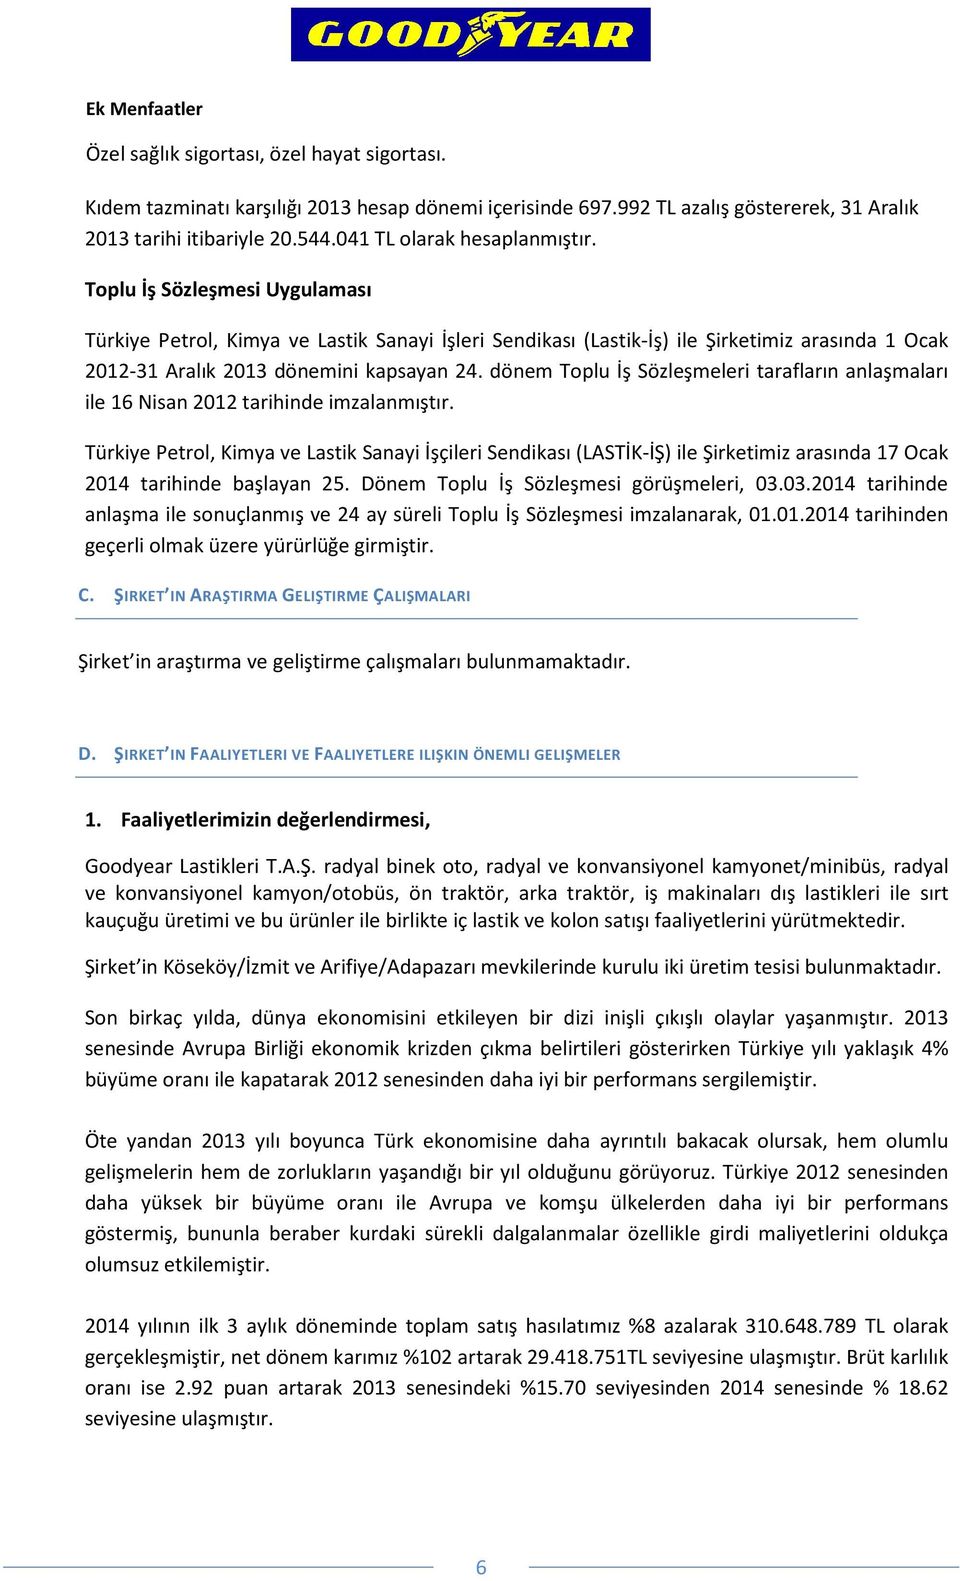 Toplu İş Sözleşmesi Uygulaması Türkiye Petrol, Kimya ve Lastik Sanayi İşleri Sendikası (Lastik-İş) ile Şirketimiz arasında 1 Ocak 2012-31 Aralık 2013 dönemini kapsayan 24.